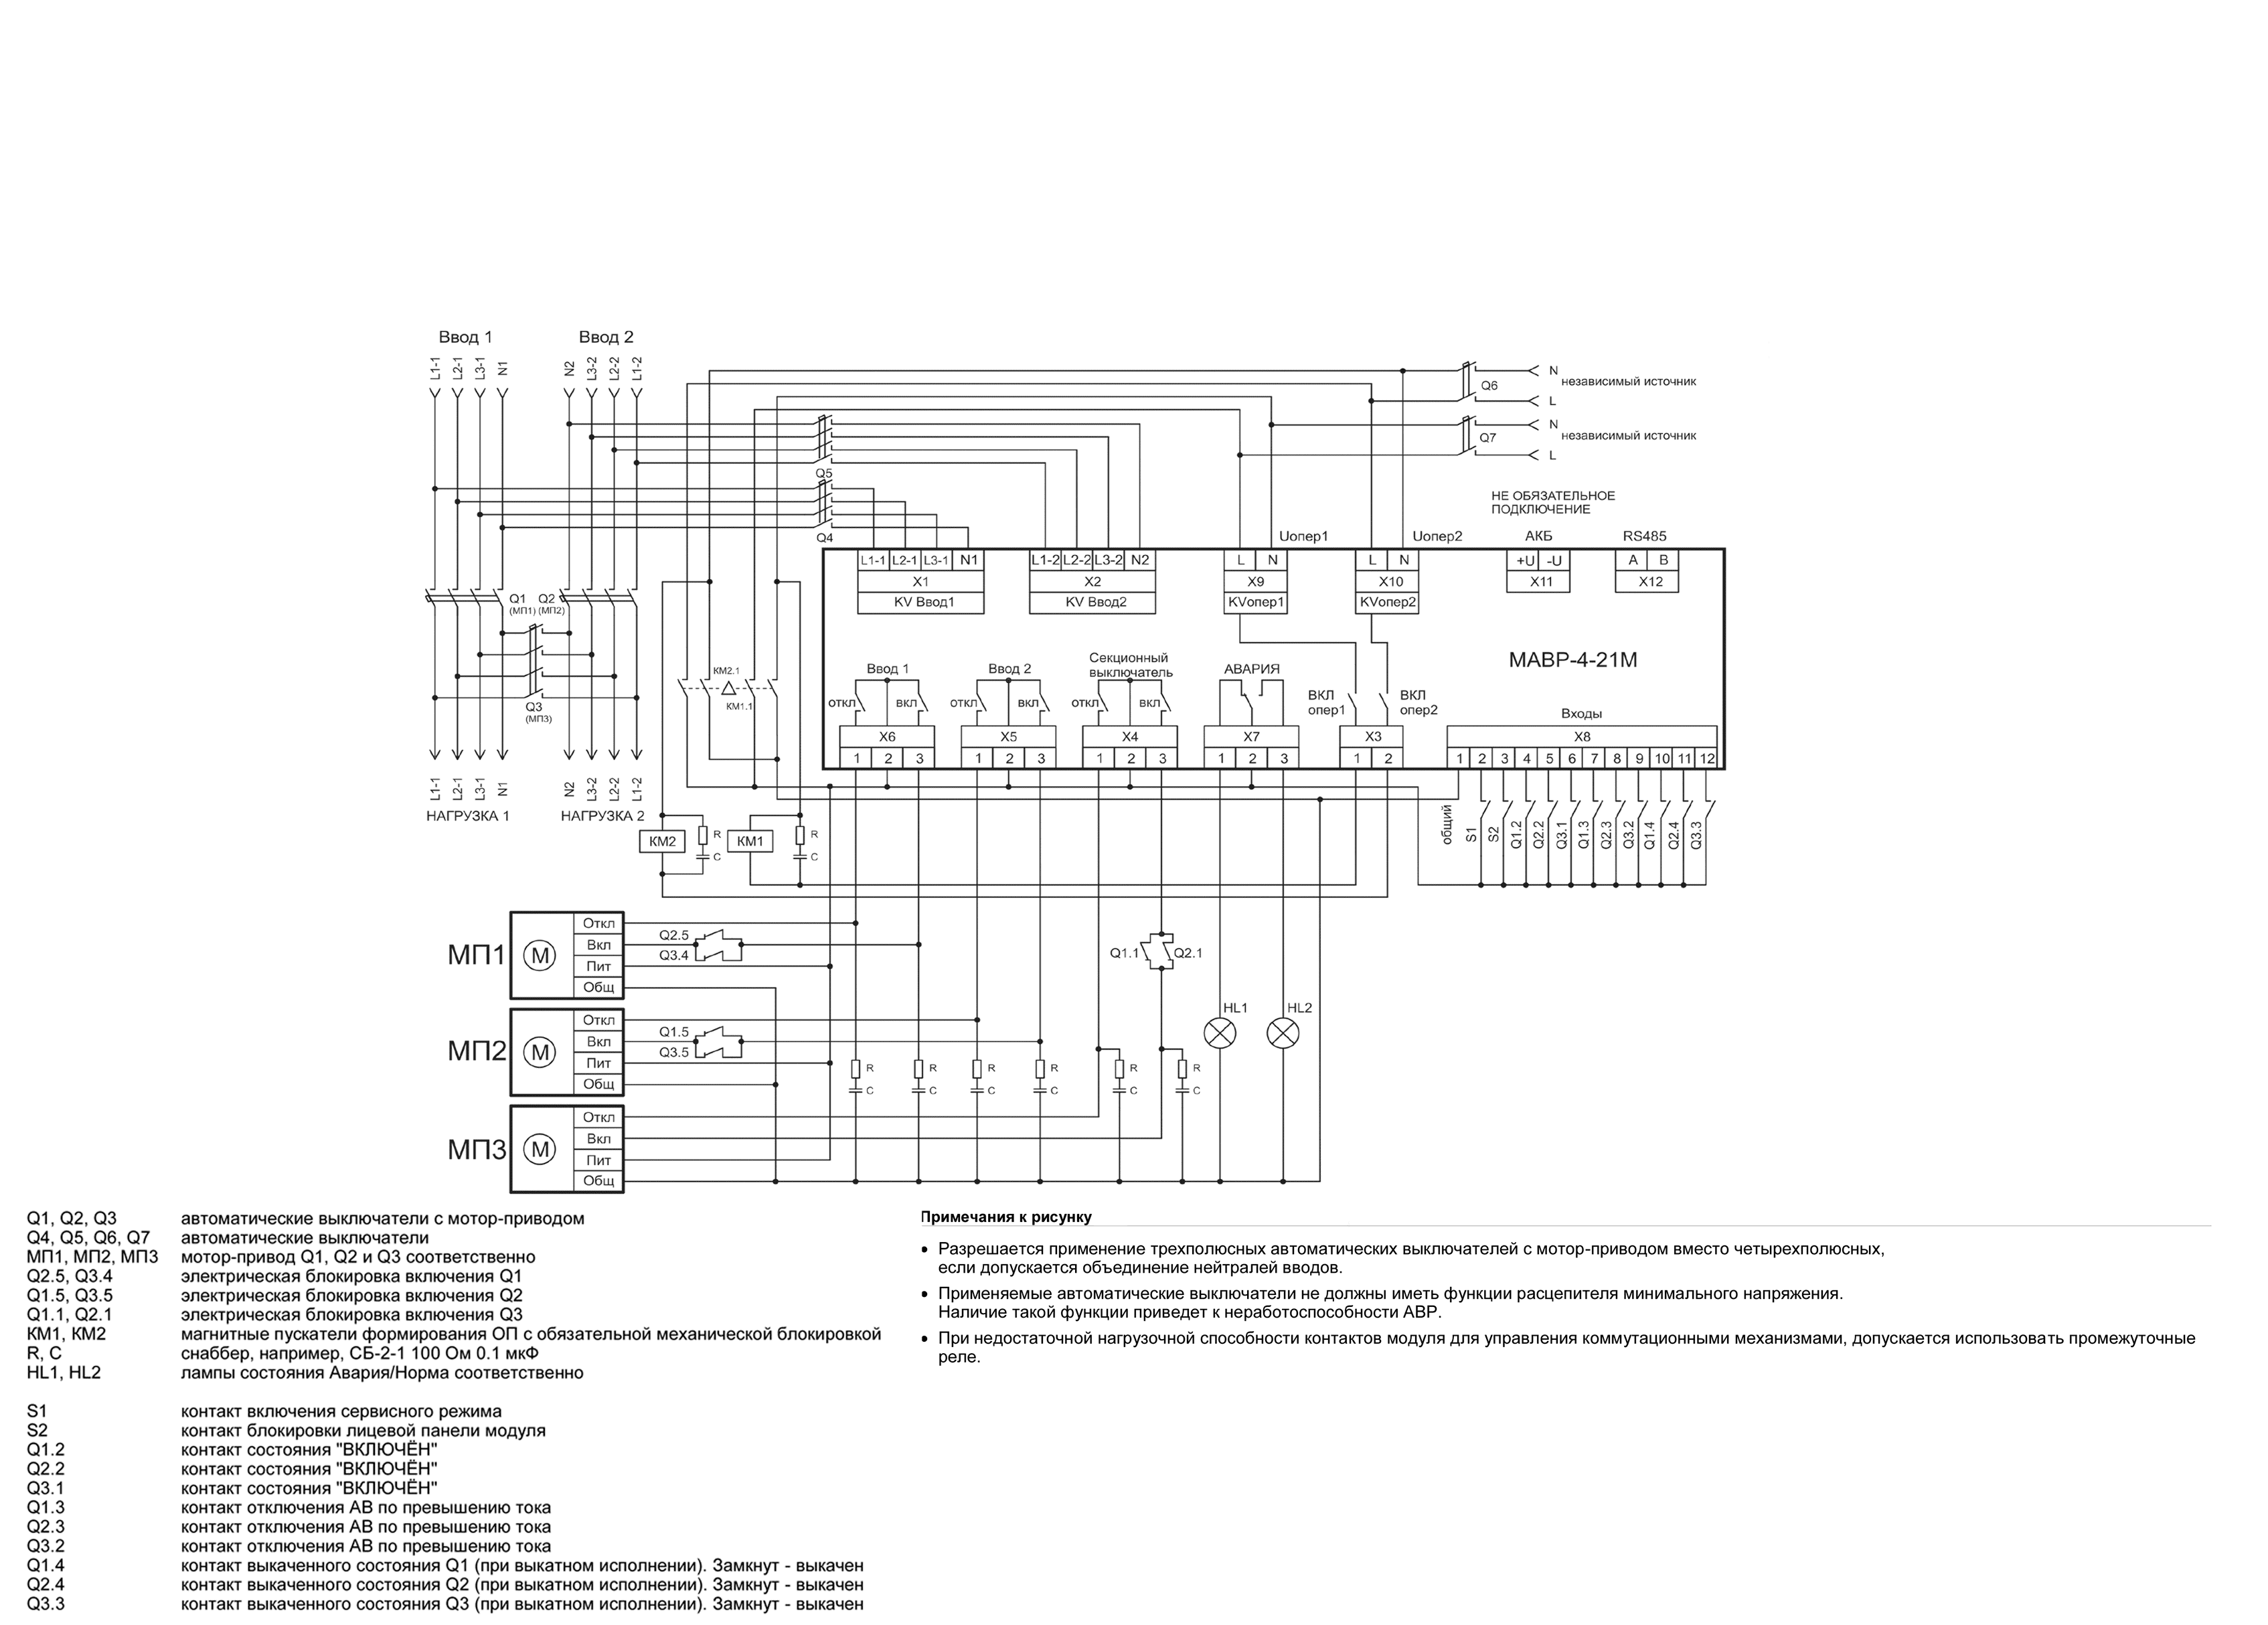 Схема АВР на автоматических выключателях с мотор-приводом с оперативным питанием от независимых источников питания МАВР-4-21М